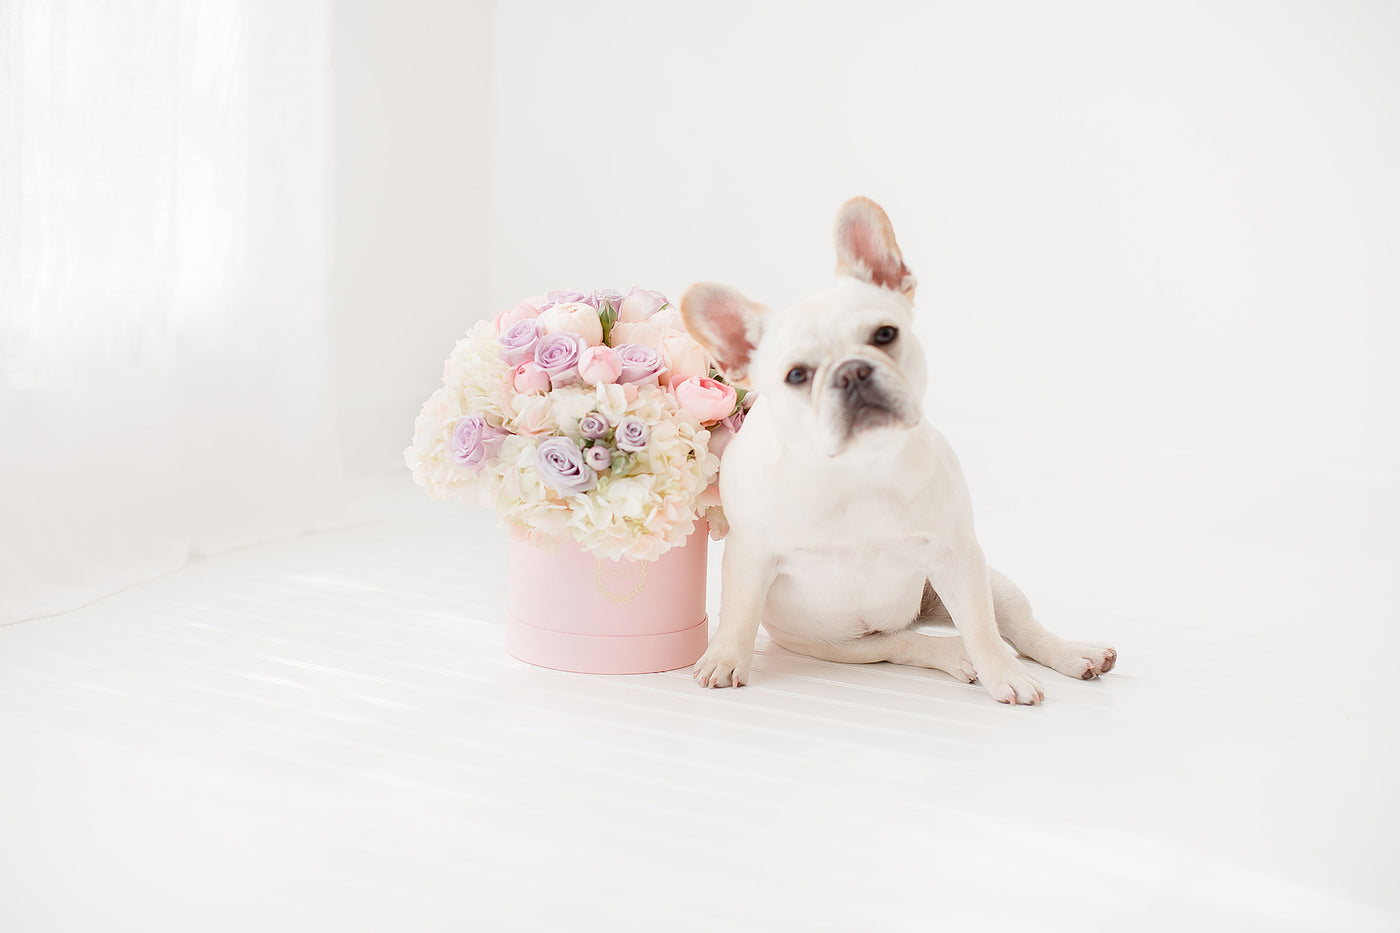 Fresh Flower Arrangement with a Cute Puppy | Our Story | La Vie en Rose Company